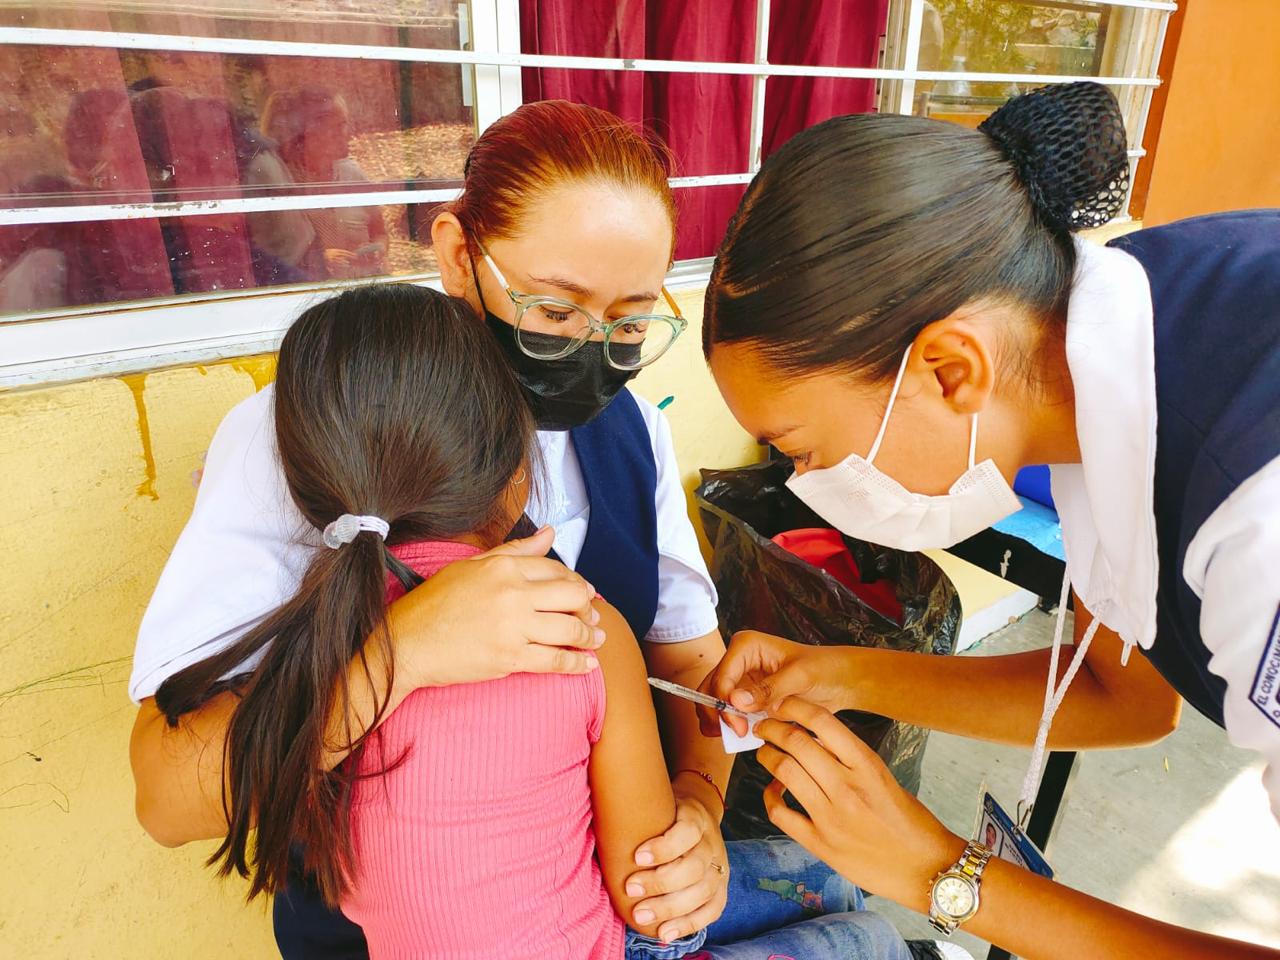 DIF Zamora realizó campaña integral de vacunación contra sarampión, paperas y rubéola